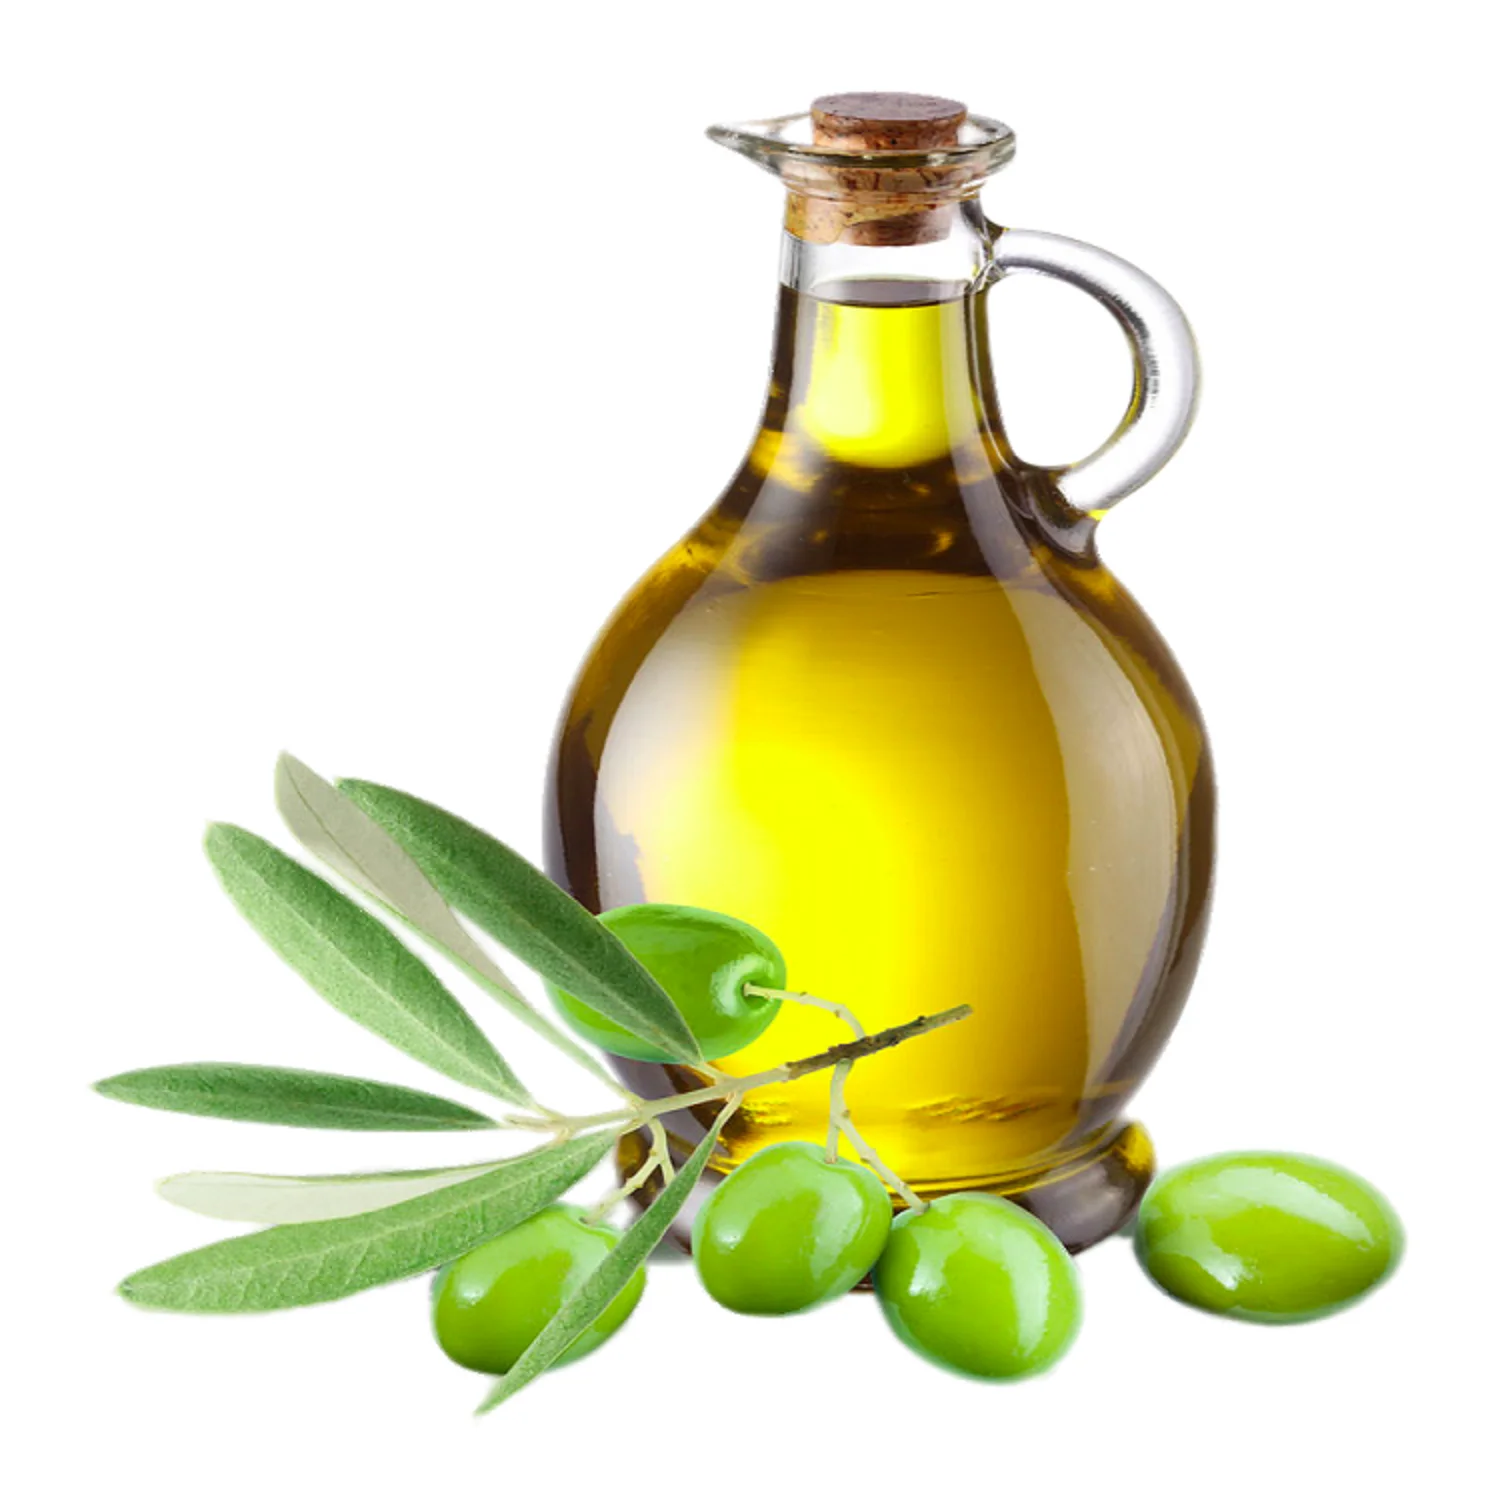 Оливковое масло первого отжима, высокое качество, оливковое масло первого отжима для ресторанов, пластиковая бутылка 5 л (10000013182297)